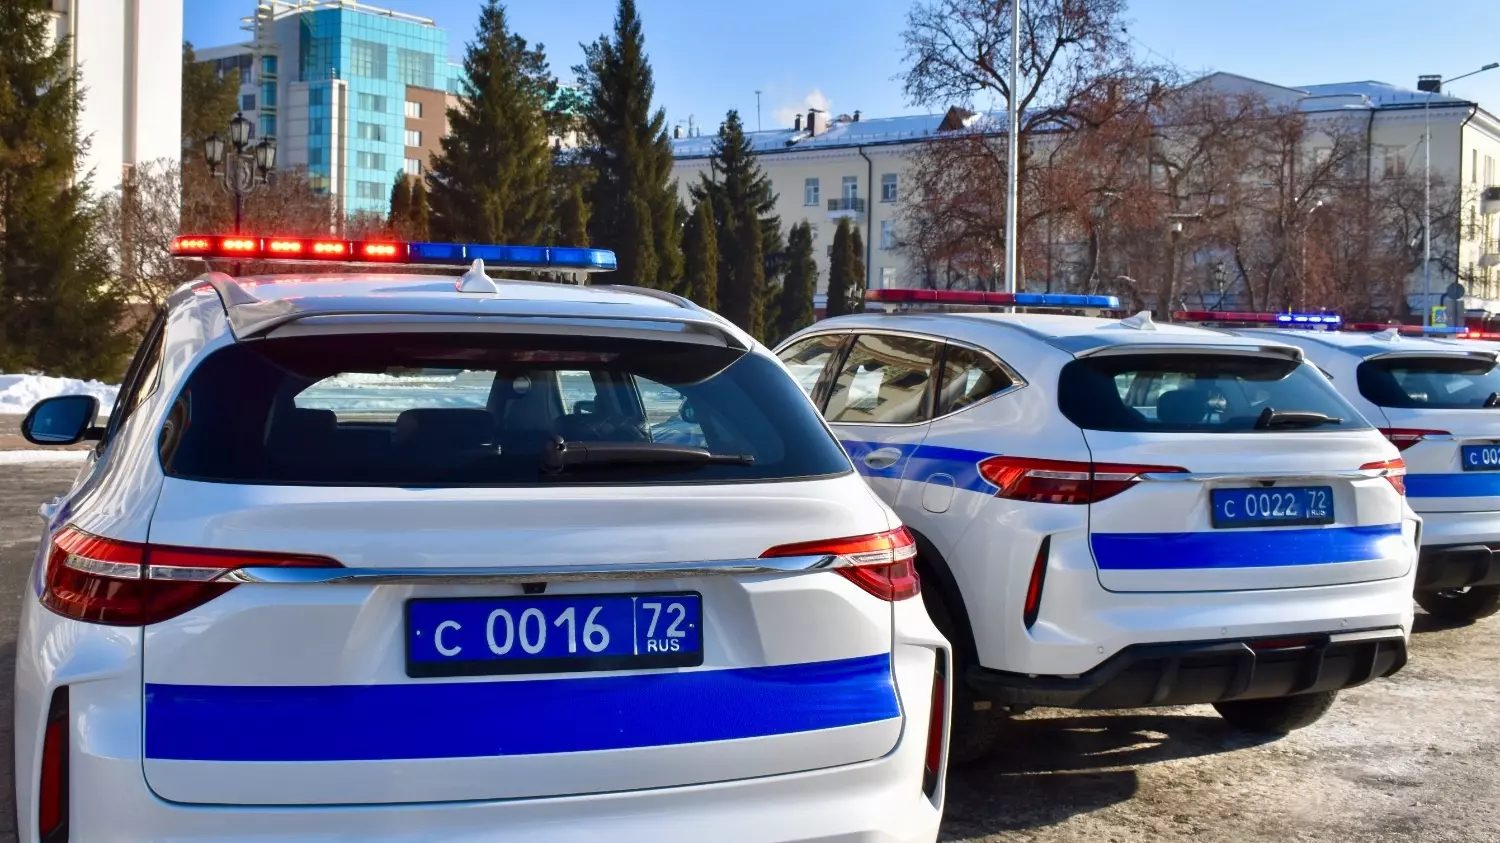 Сотрудники ГИБДД Тюменской области получили 24 новых автомобиля марки HAVAL